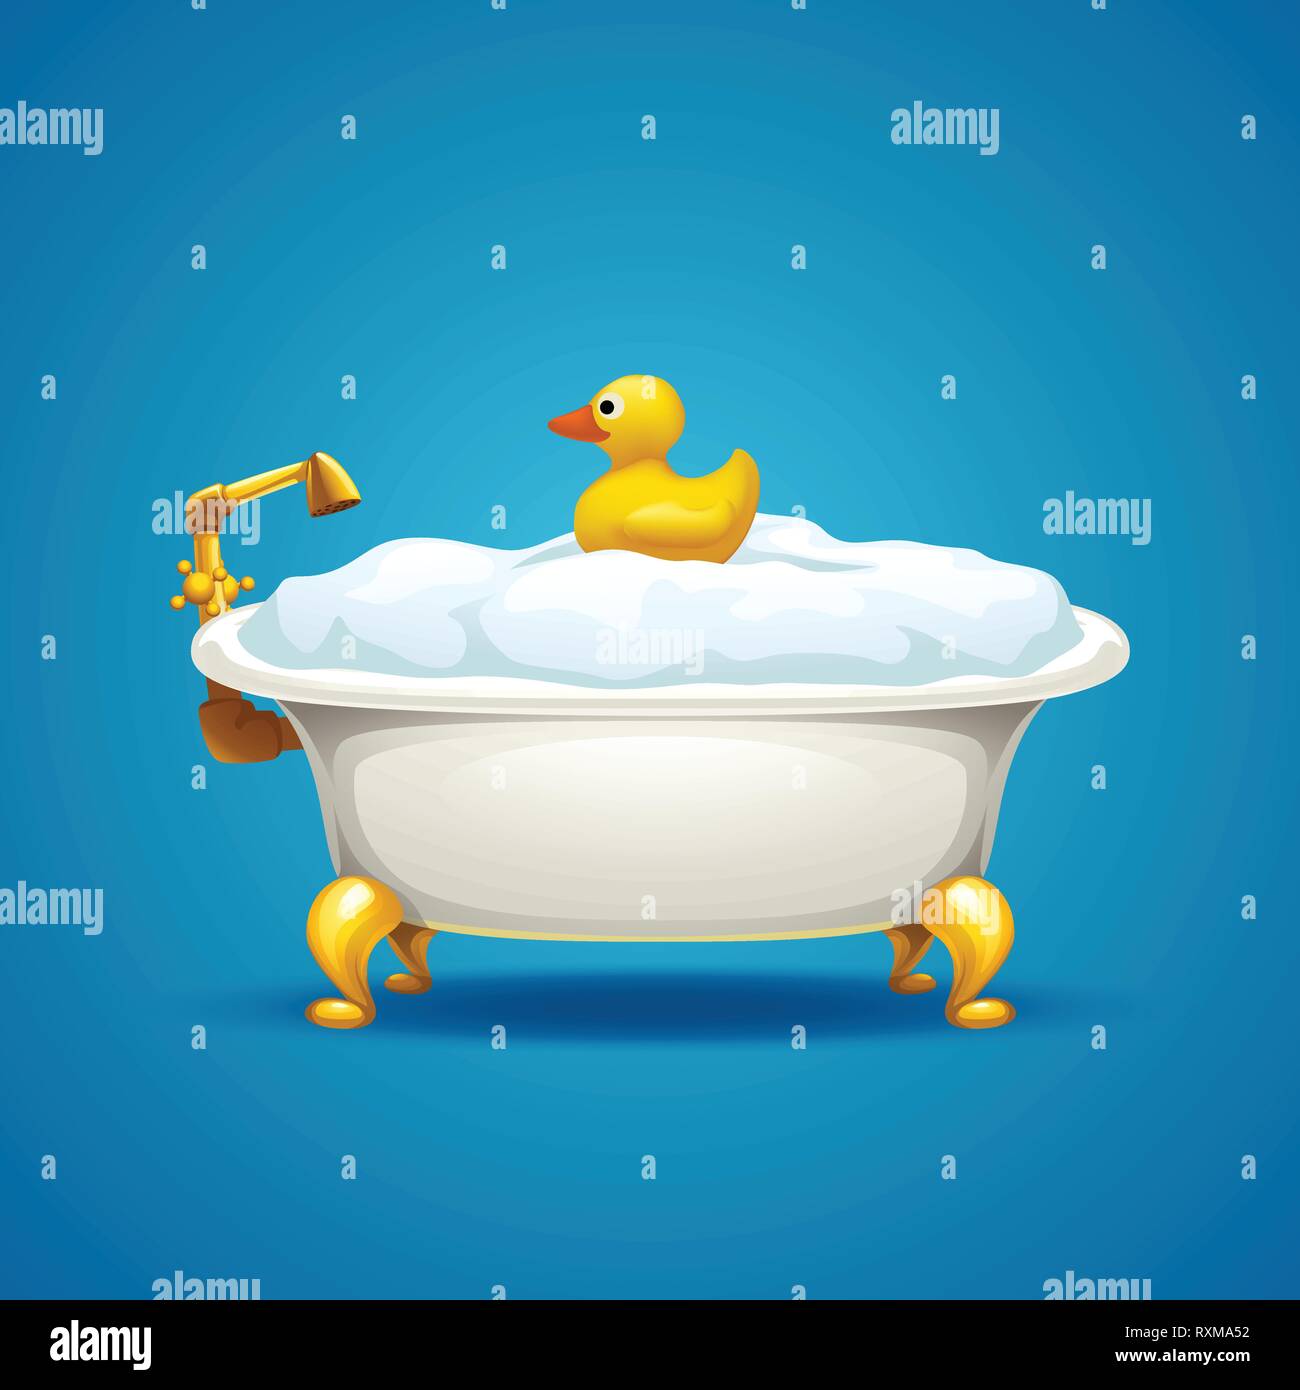 Badewanne mit Schaum auf Blau Stock-Vektorgrafik - Alamy